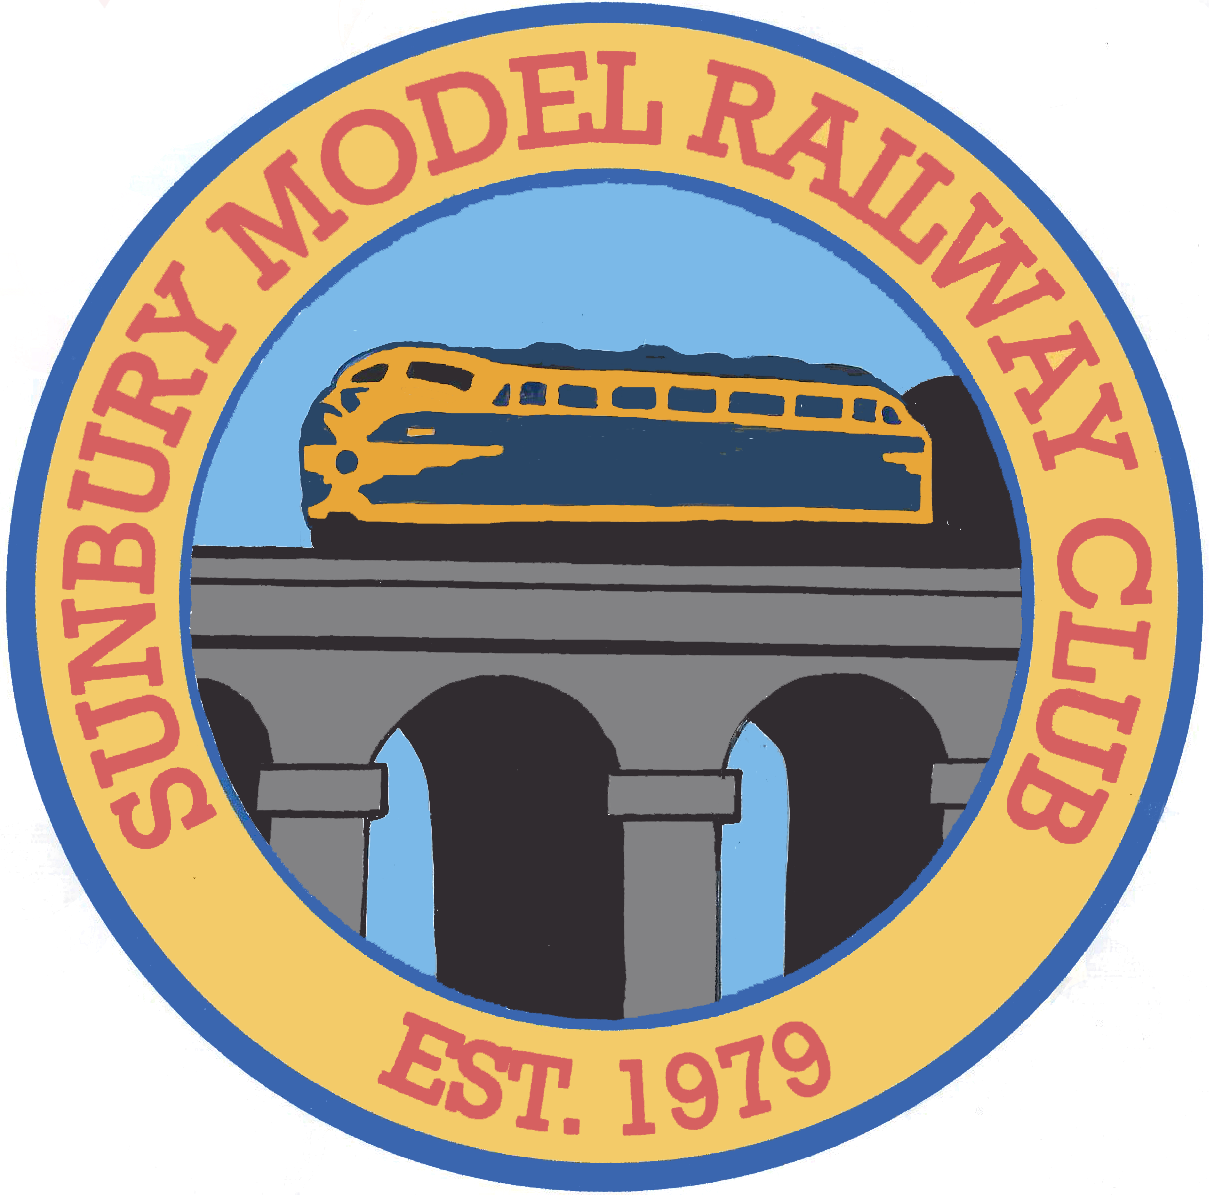 Sunbury Model Railway Club